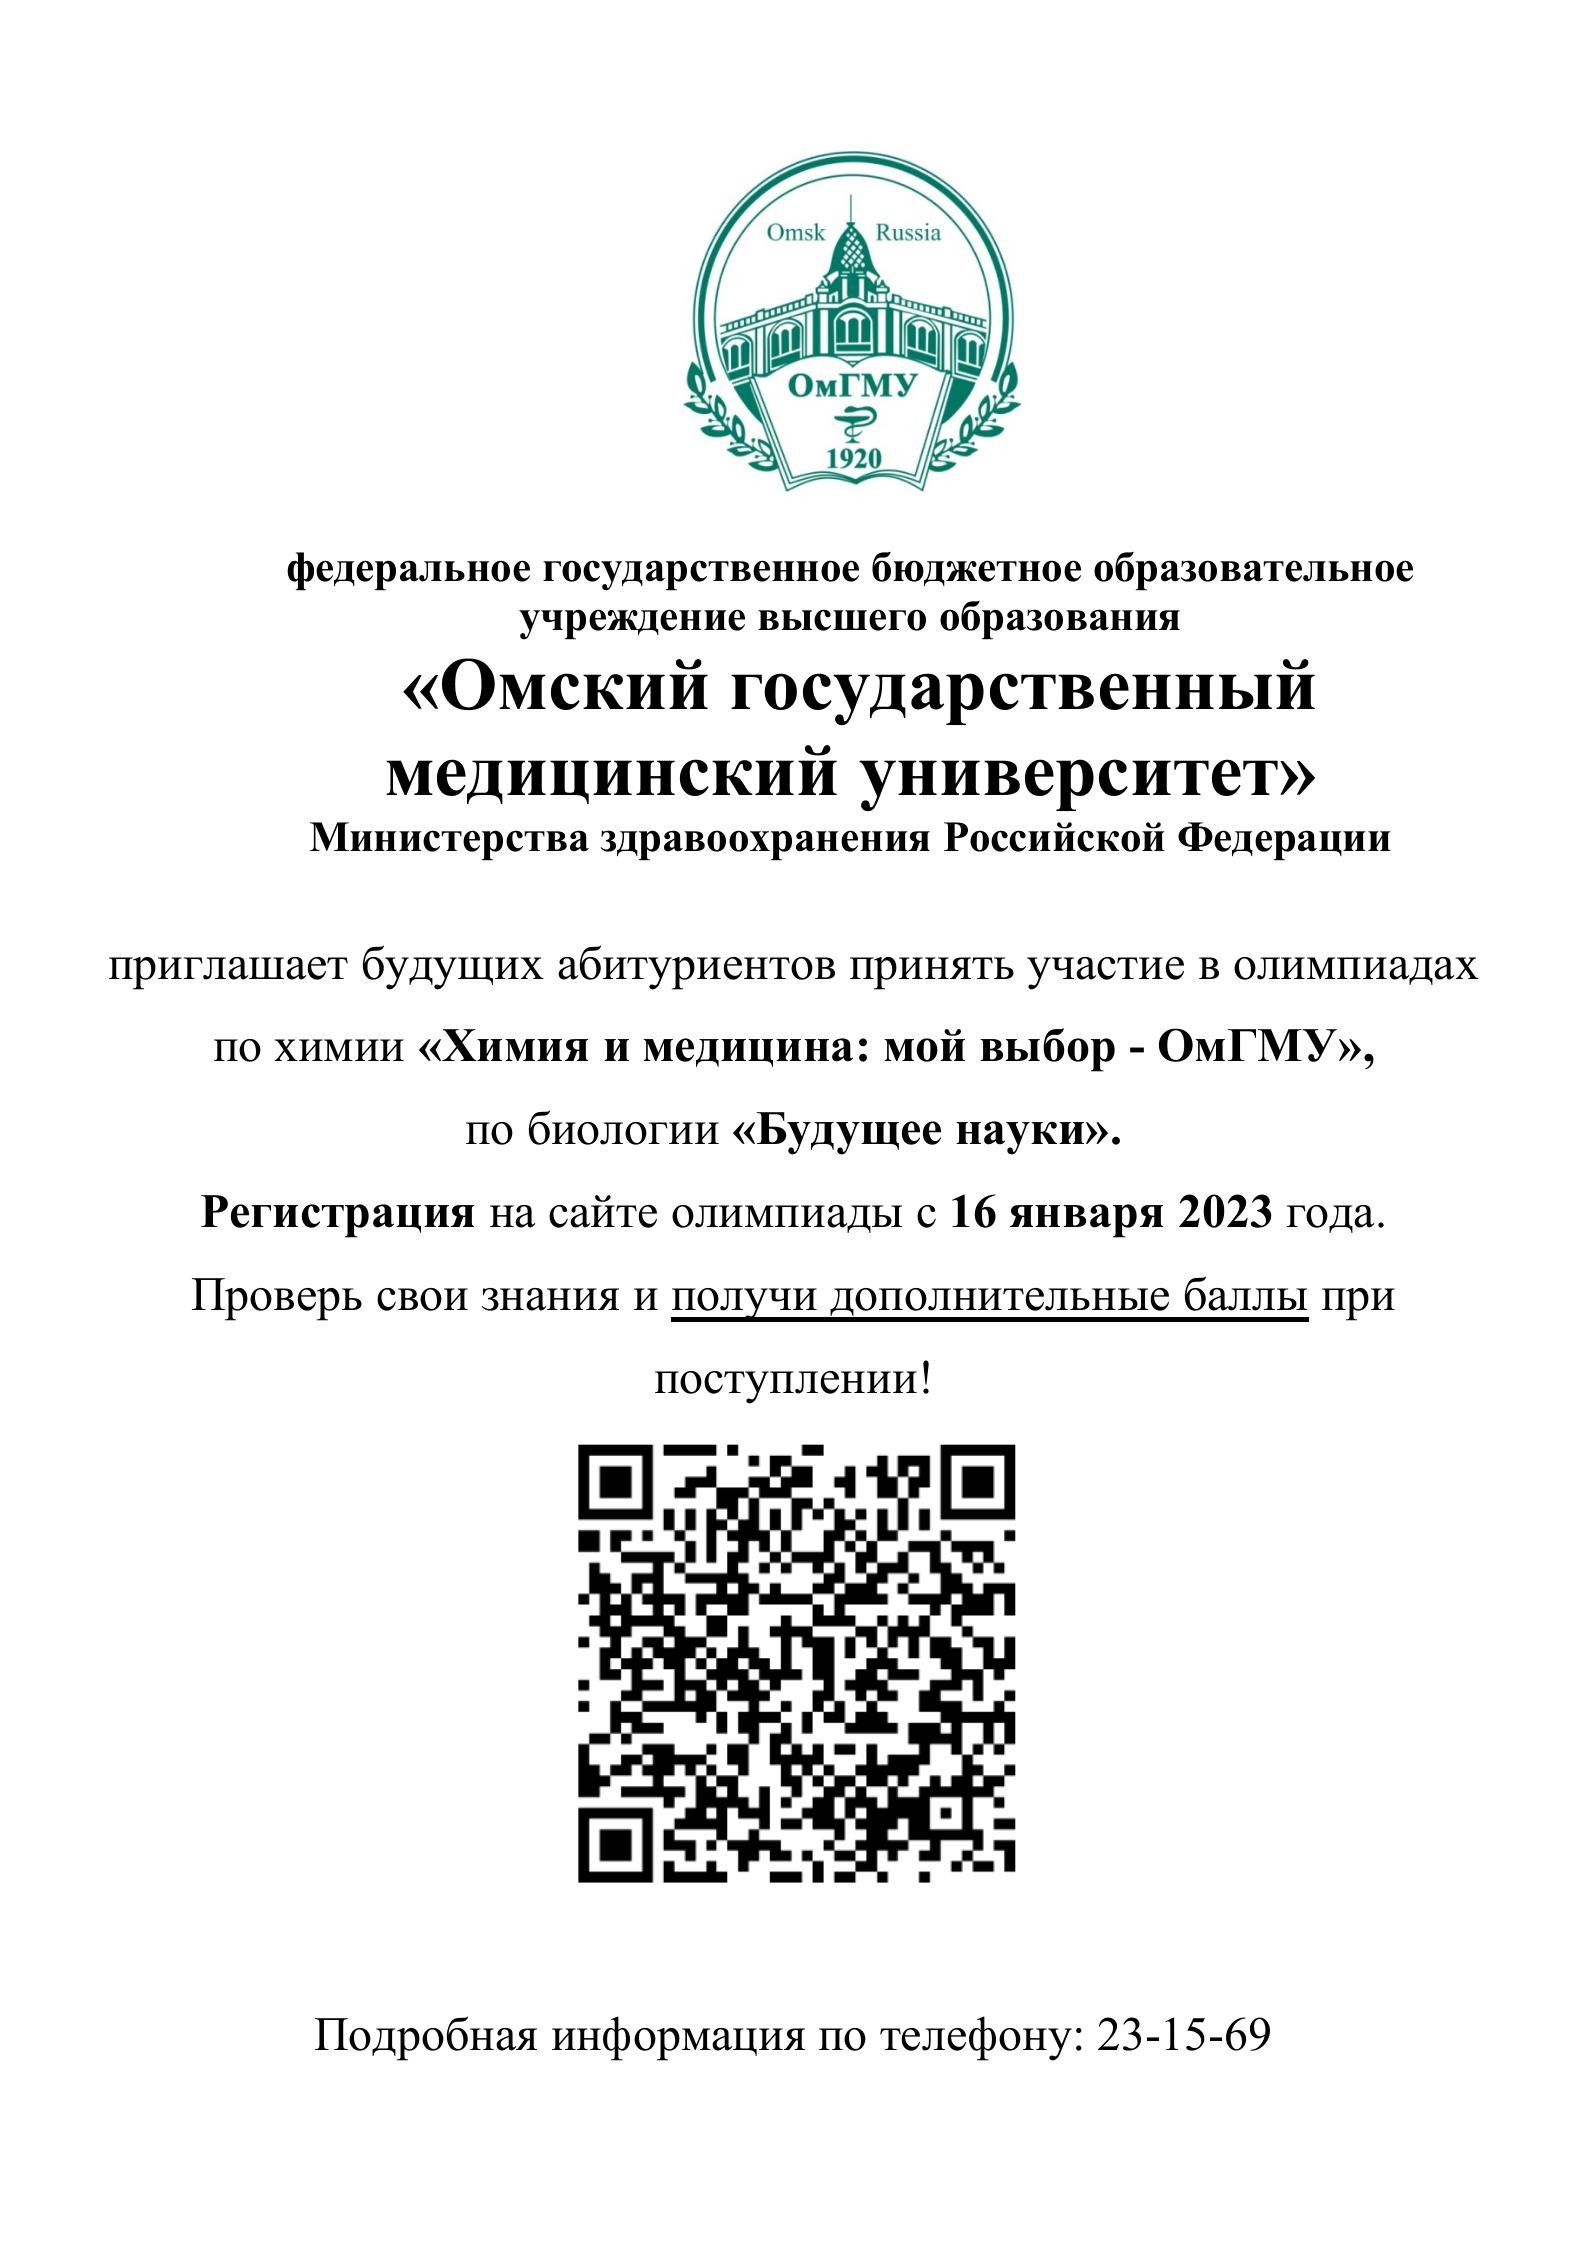 «Омский государственный медицинский университет» приглашает будущих абитуриентов